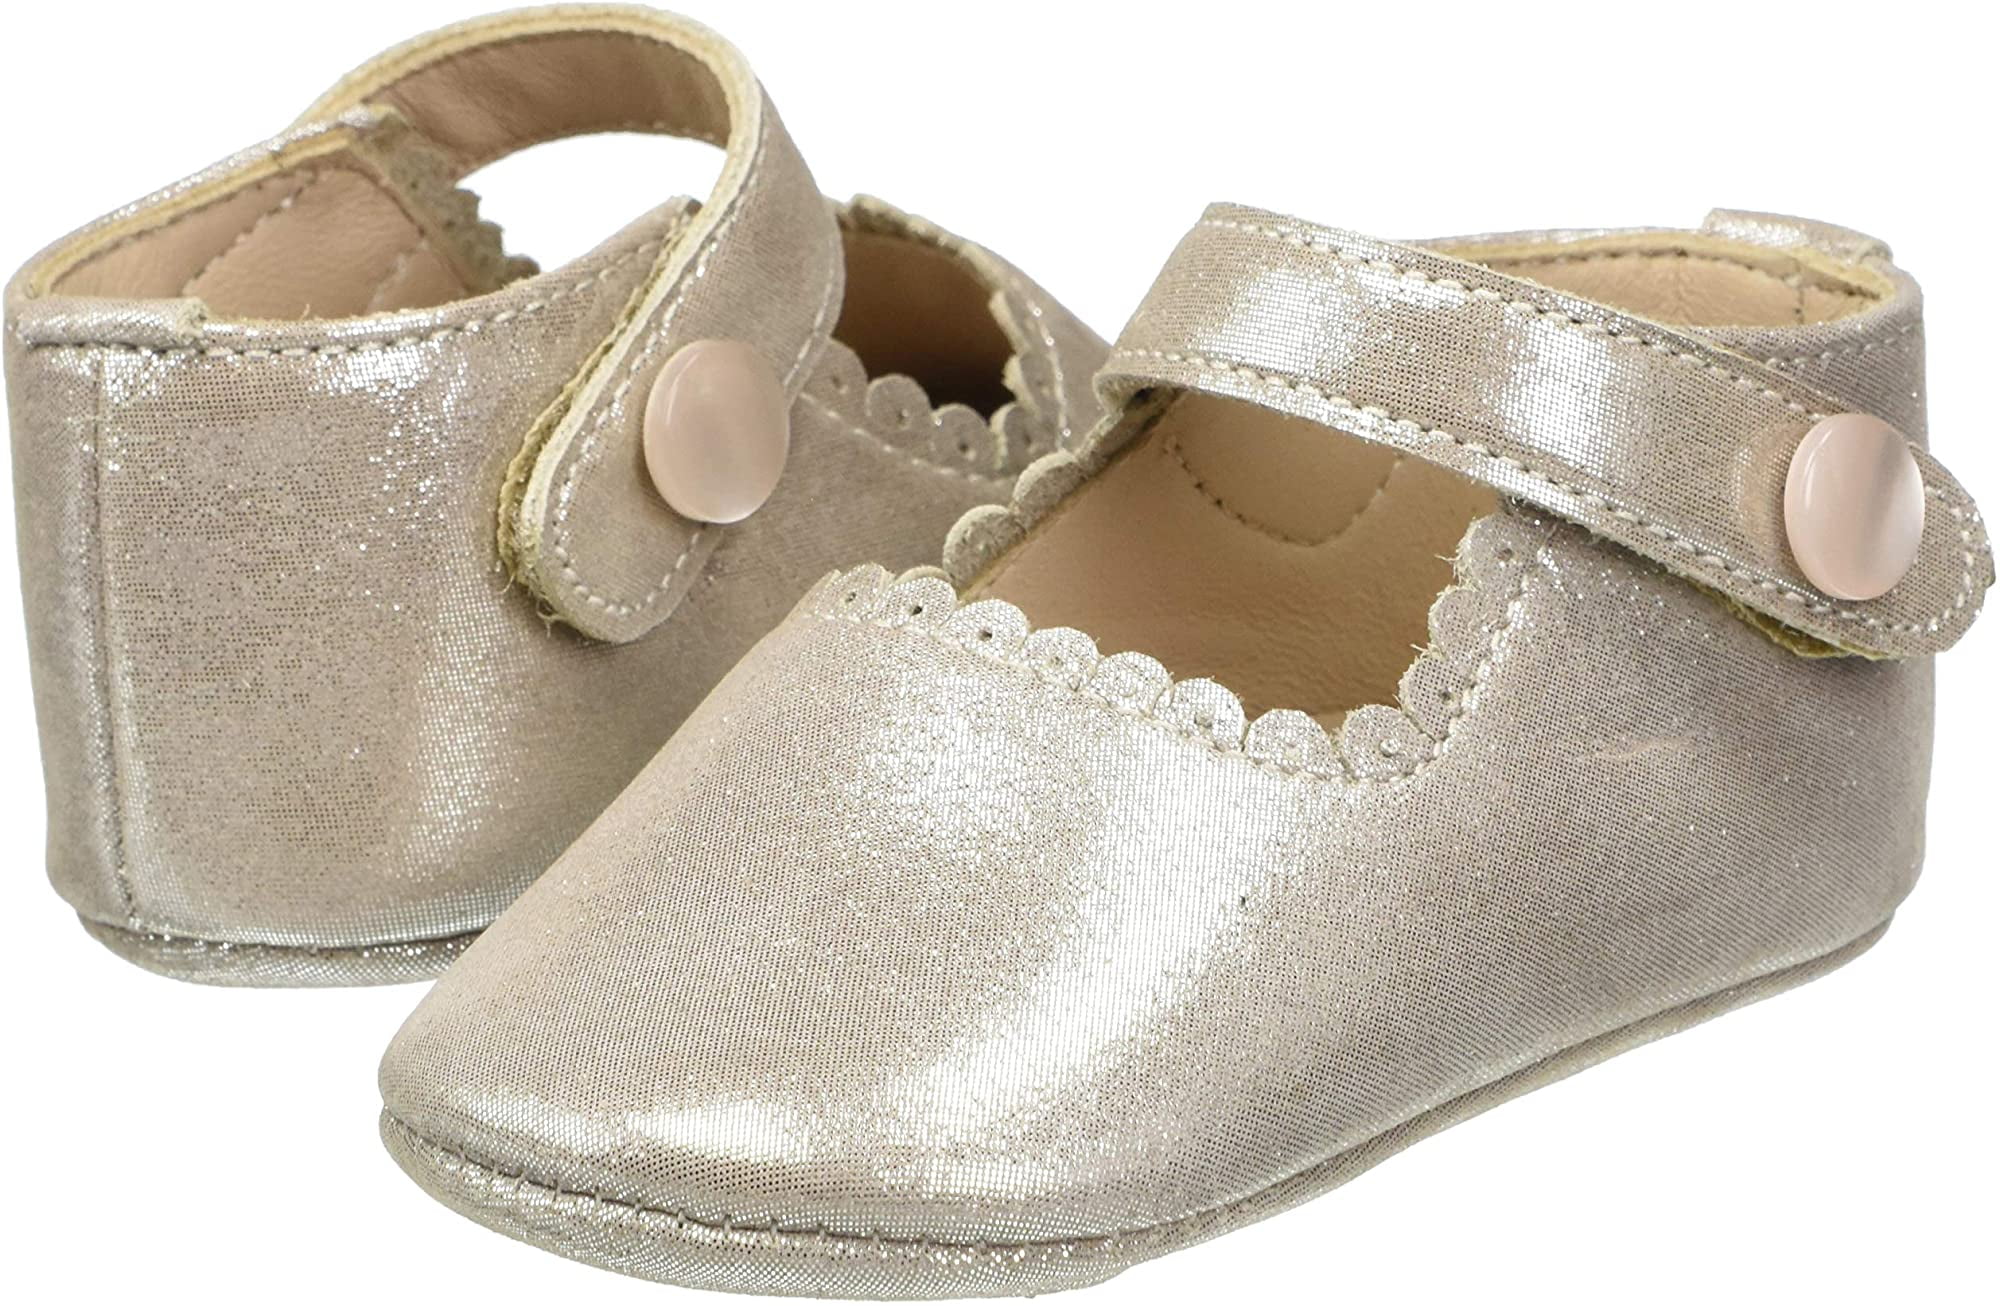 Elephantito Unisex-Child European Crib Shoe 